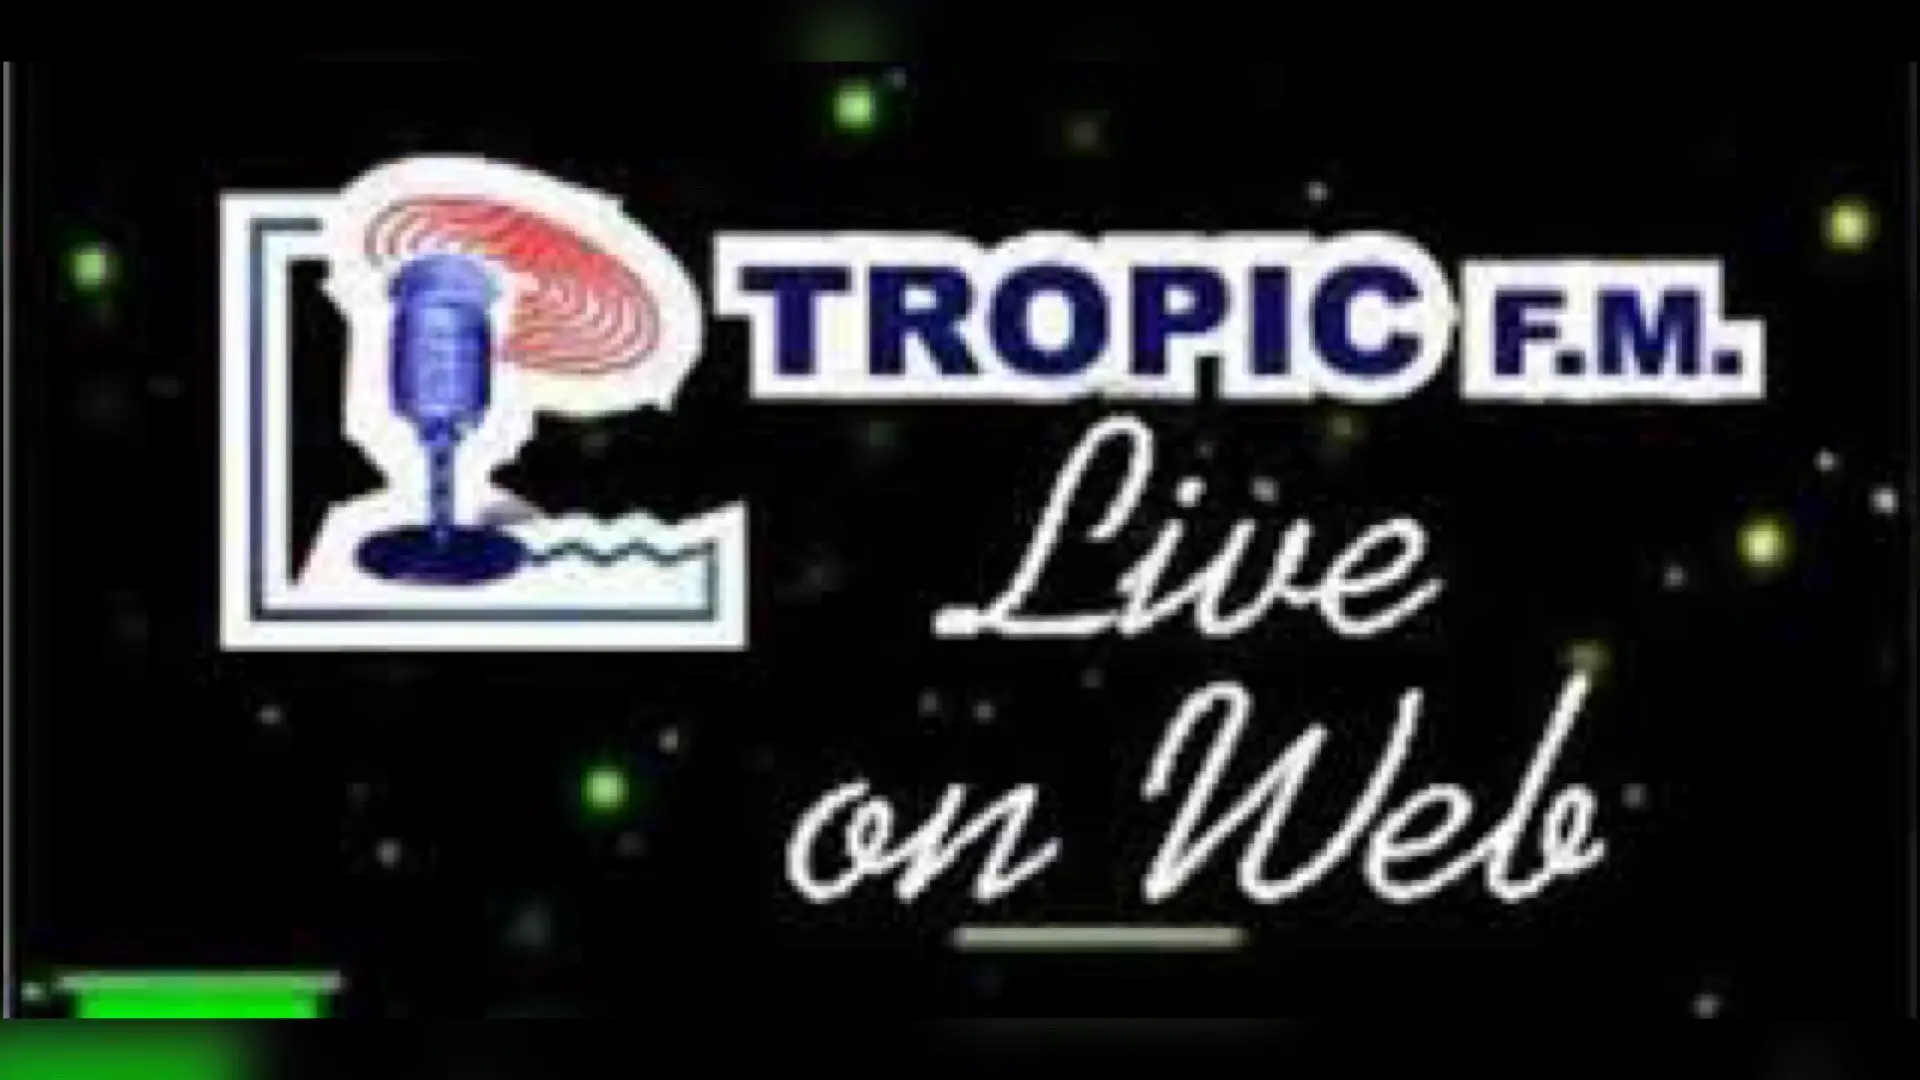 Covid-19: Tropic FM suspend temporairement toutes ses émissions